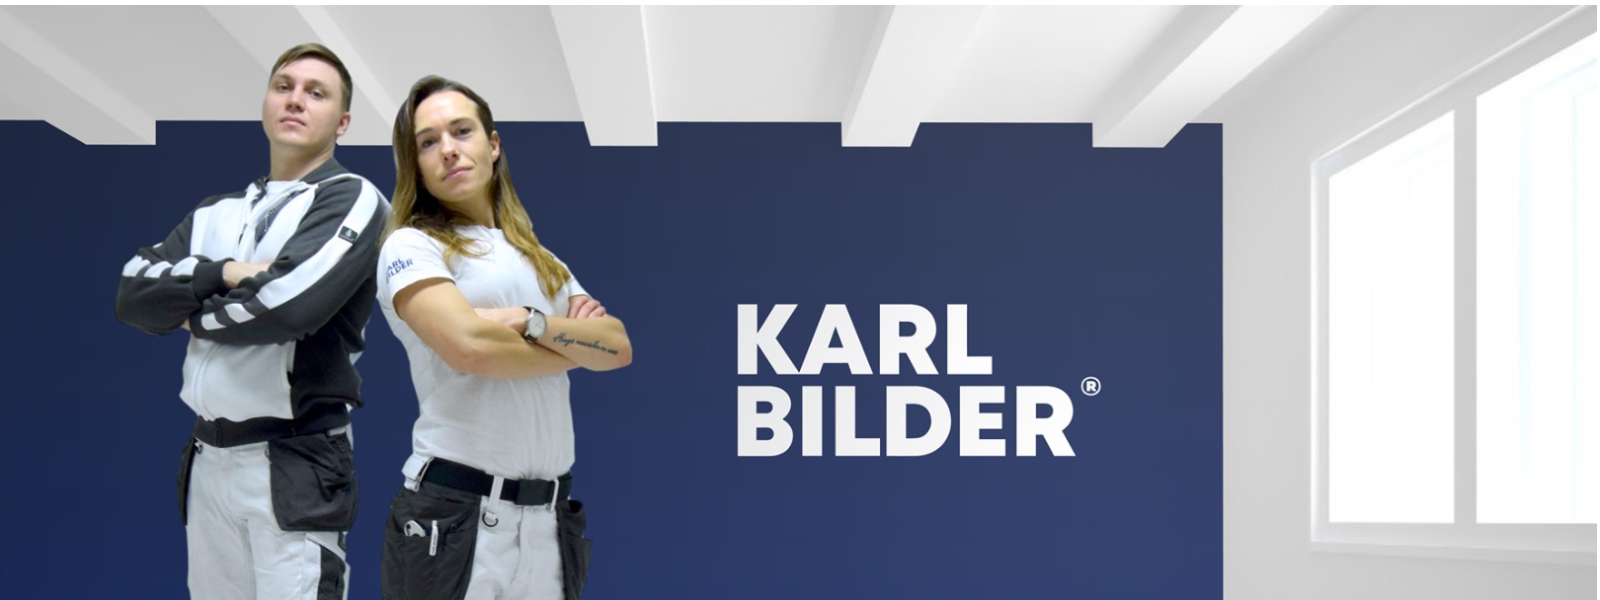 KARL BILDER OÜ - KARL BILDER on saksa kvaliteetsete Wagner seadmete ametlik esindaja ja edasimüüja Eestis.